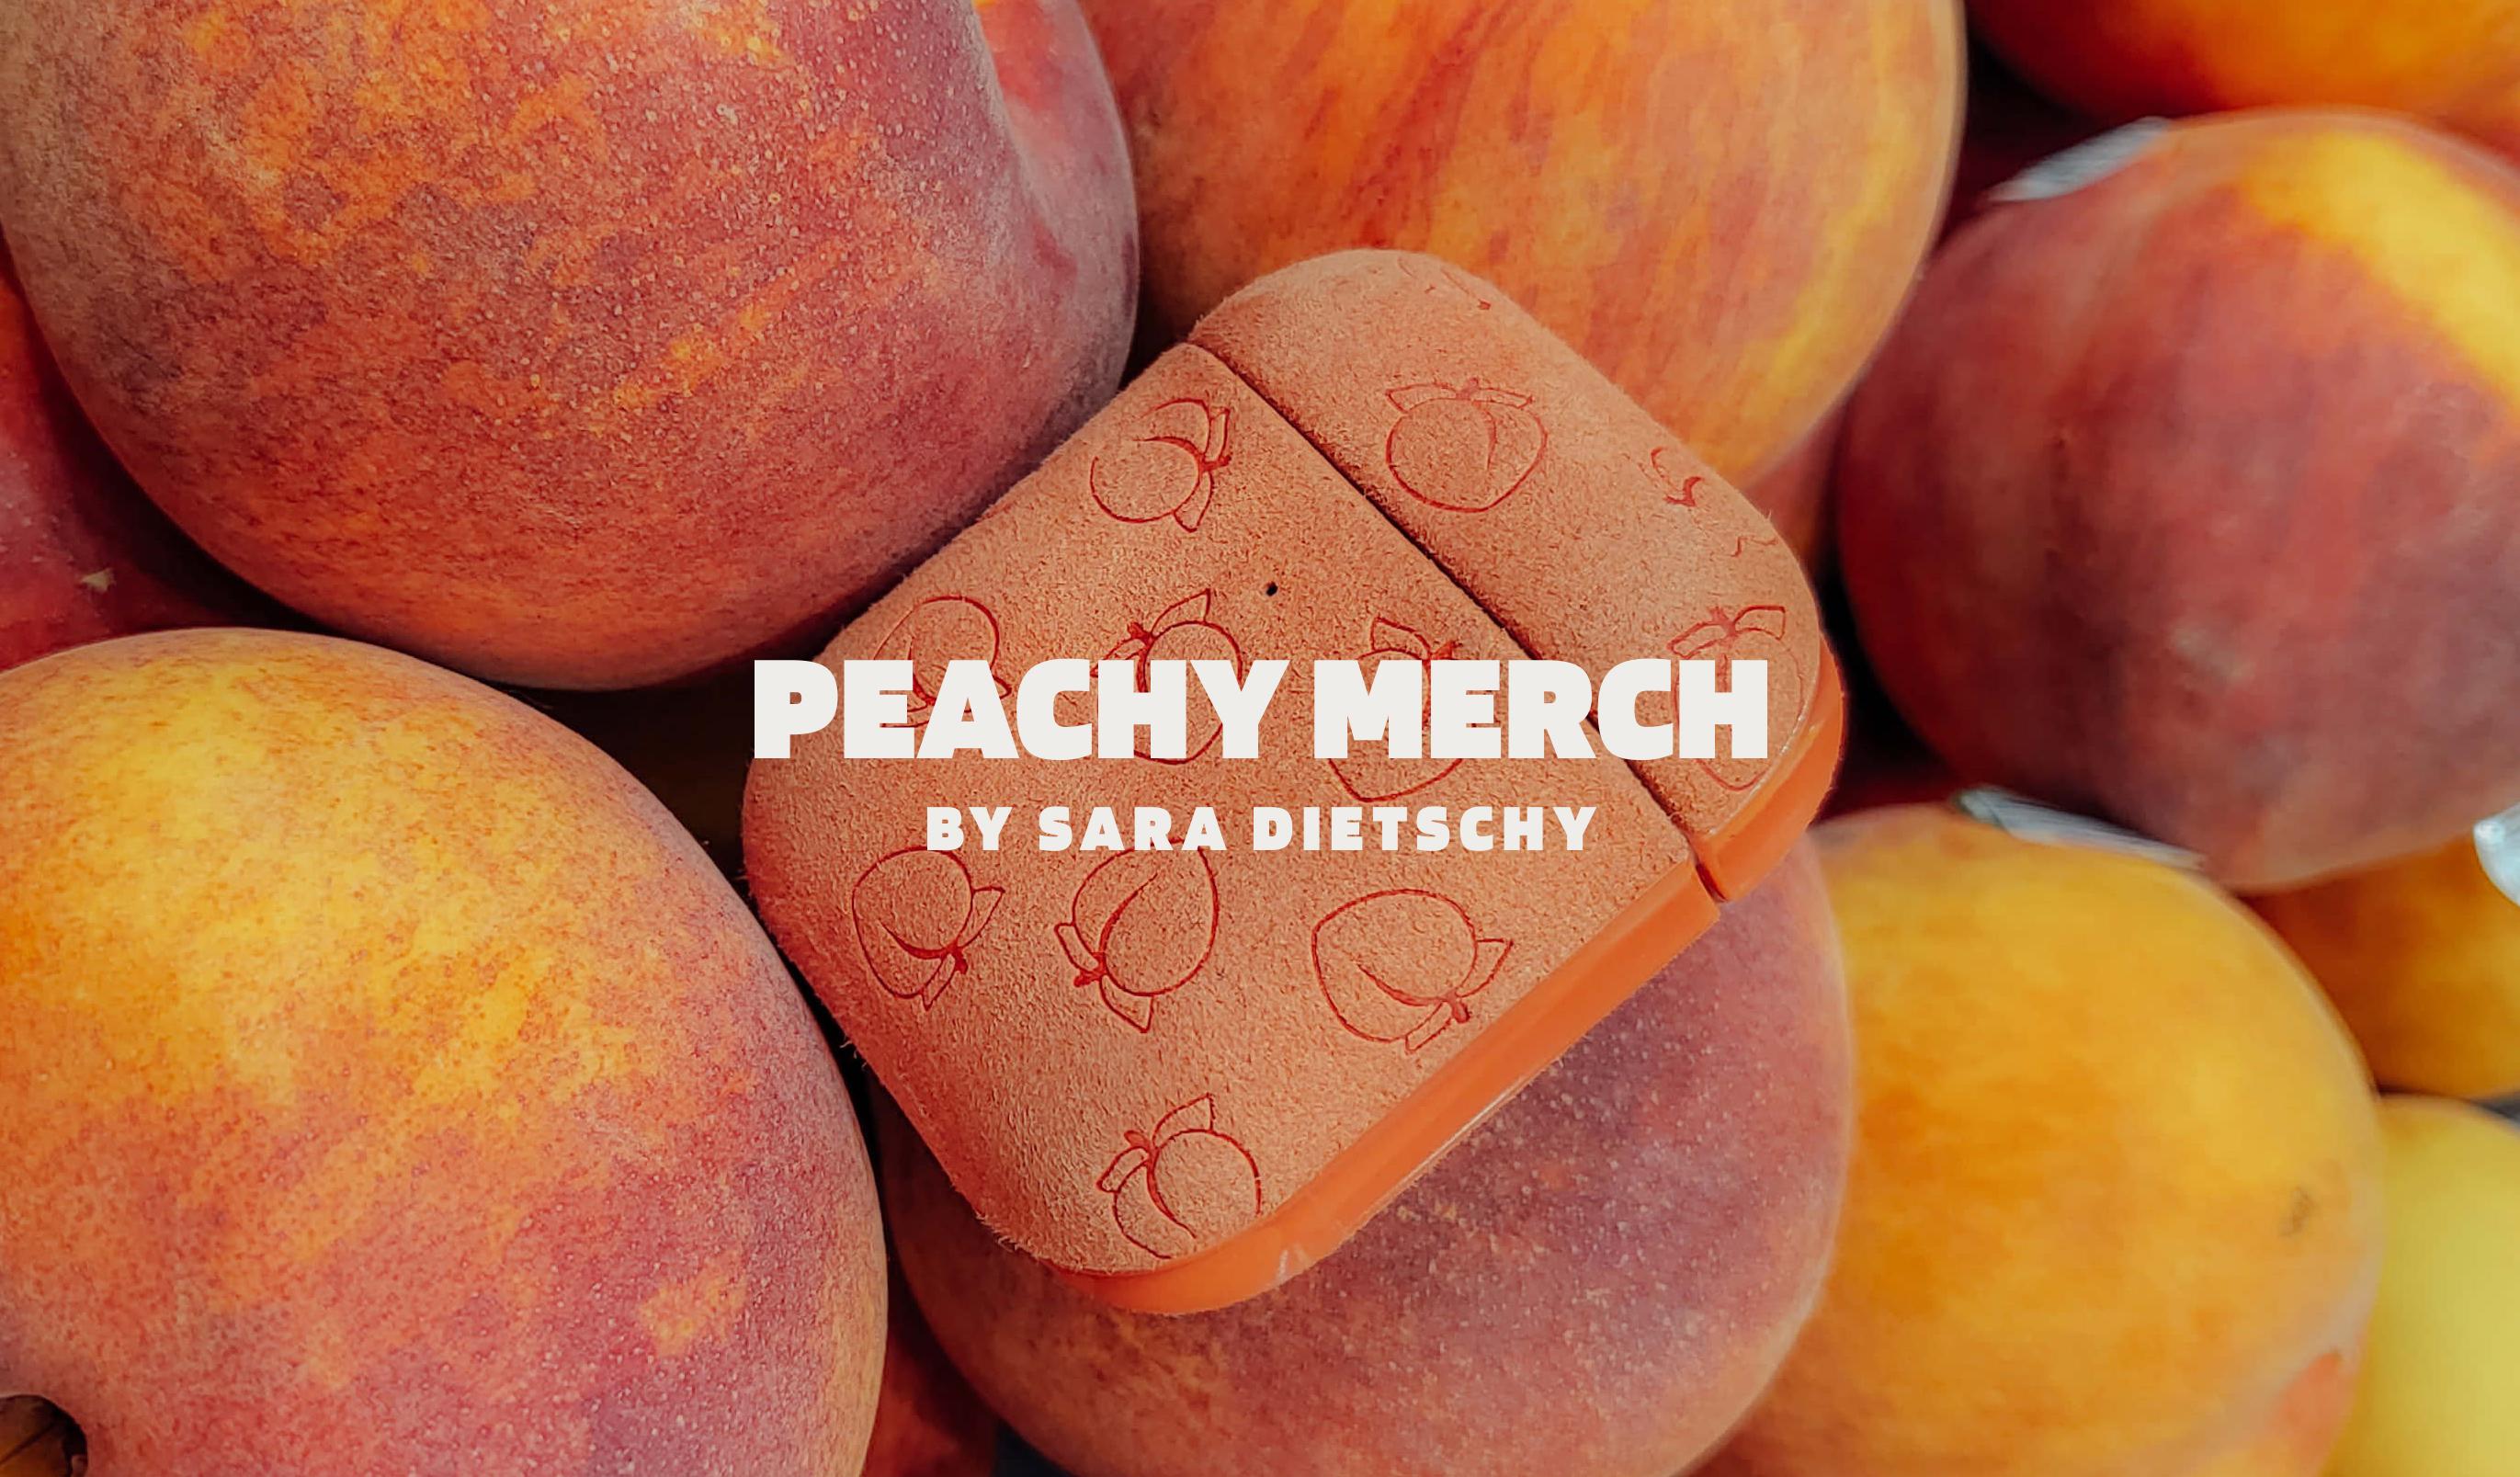 Peachy Merch by Sara Dietschy